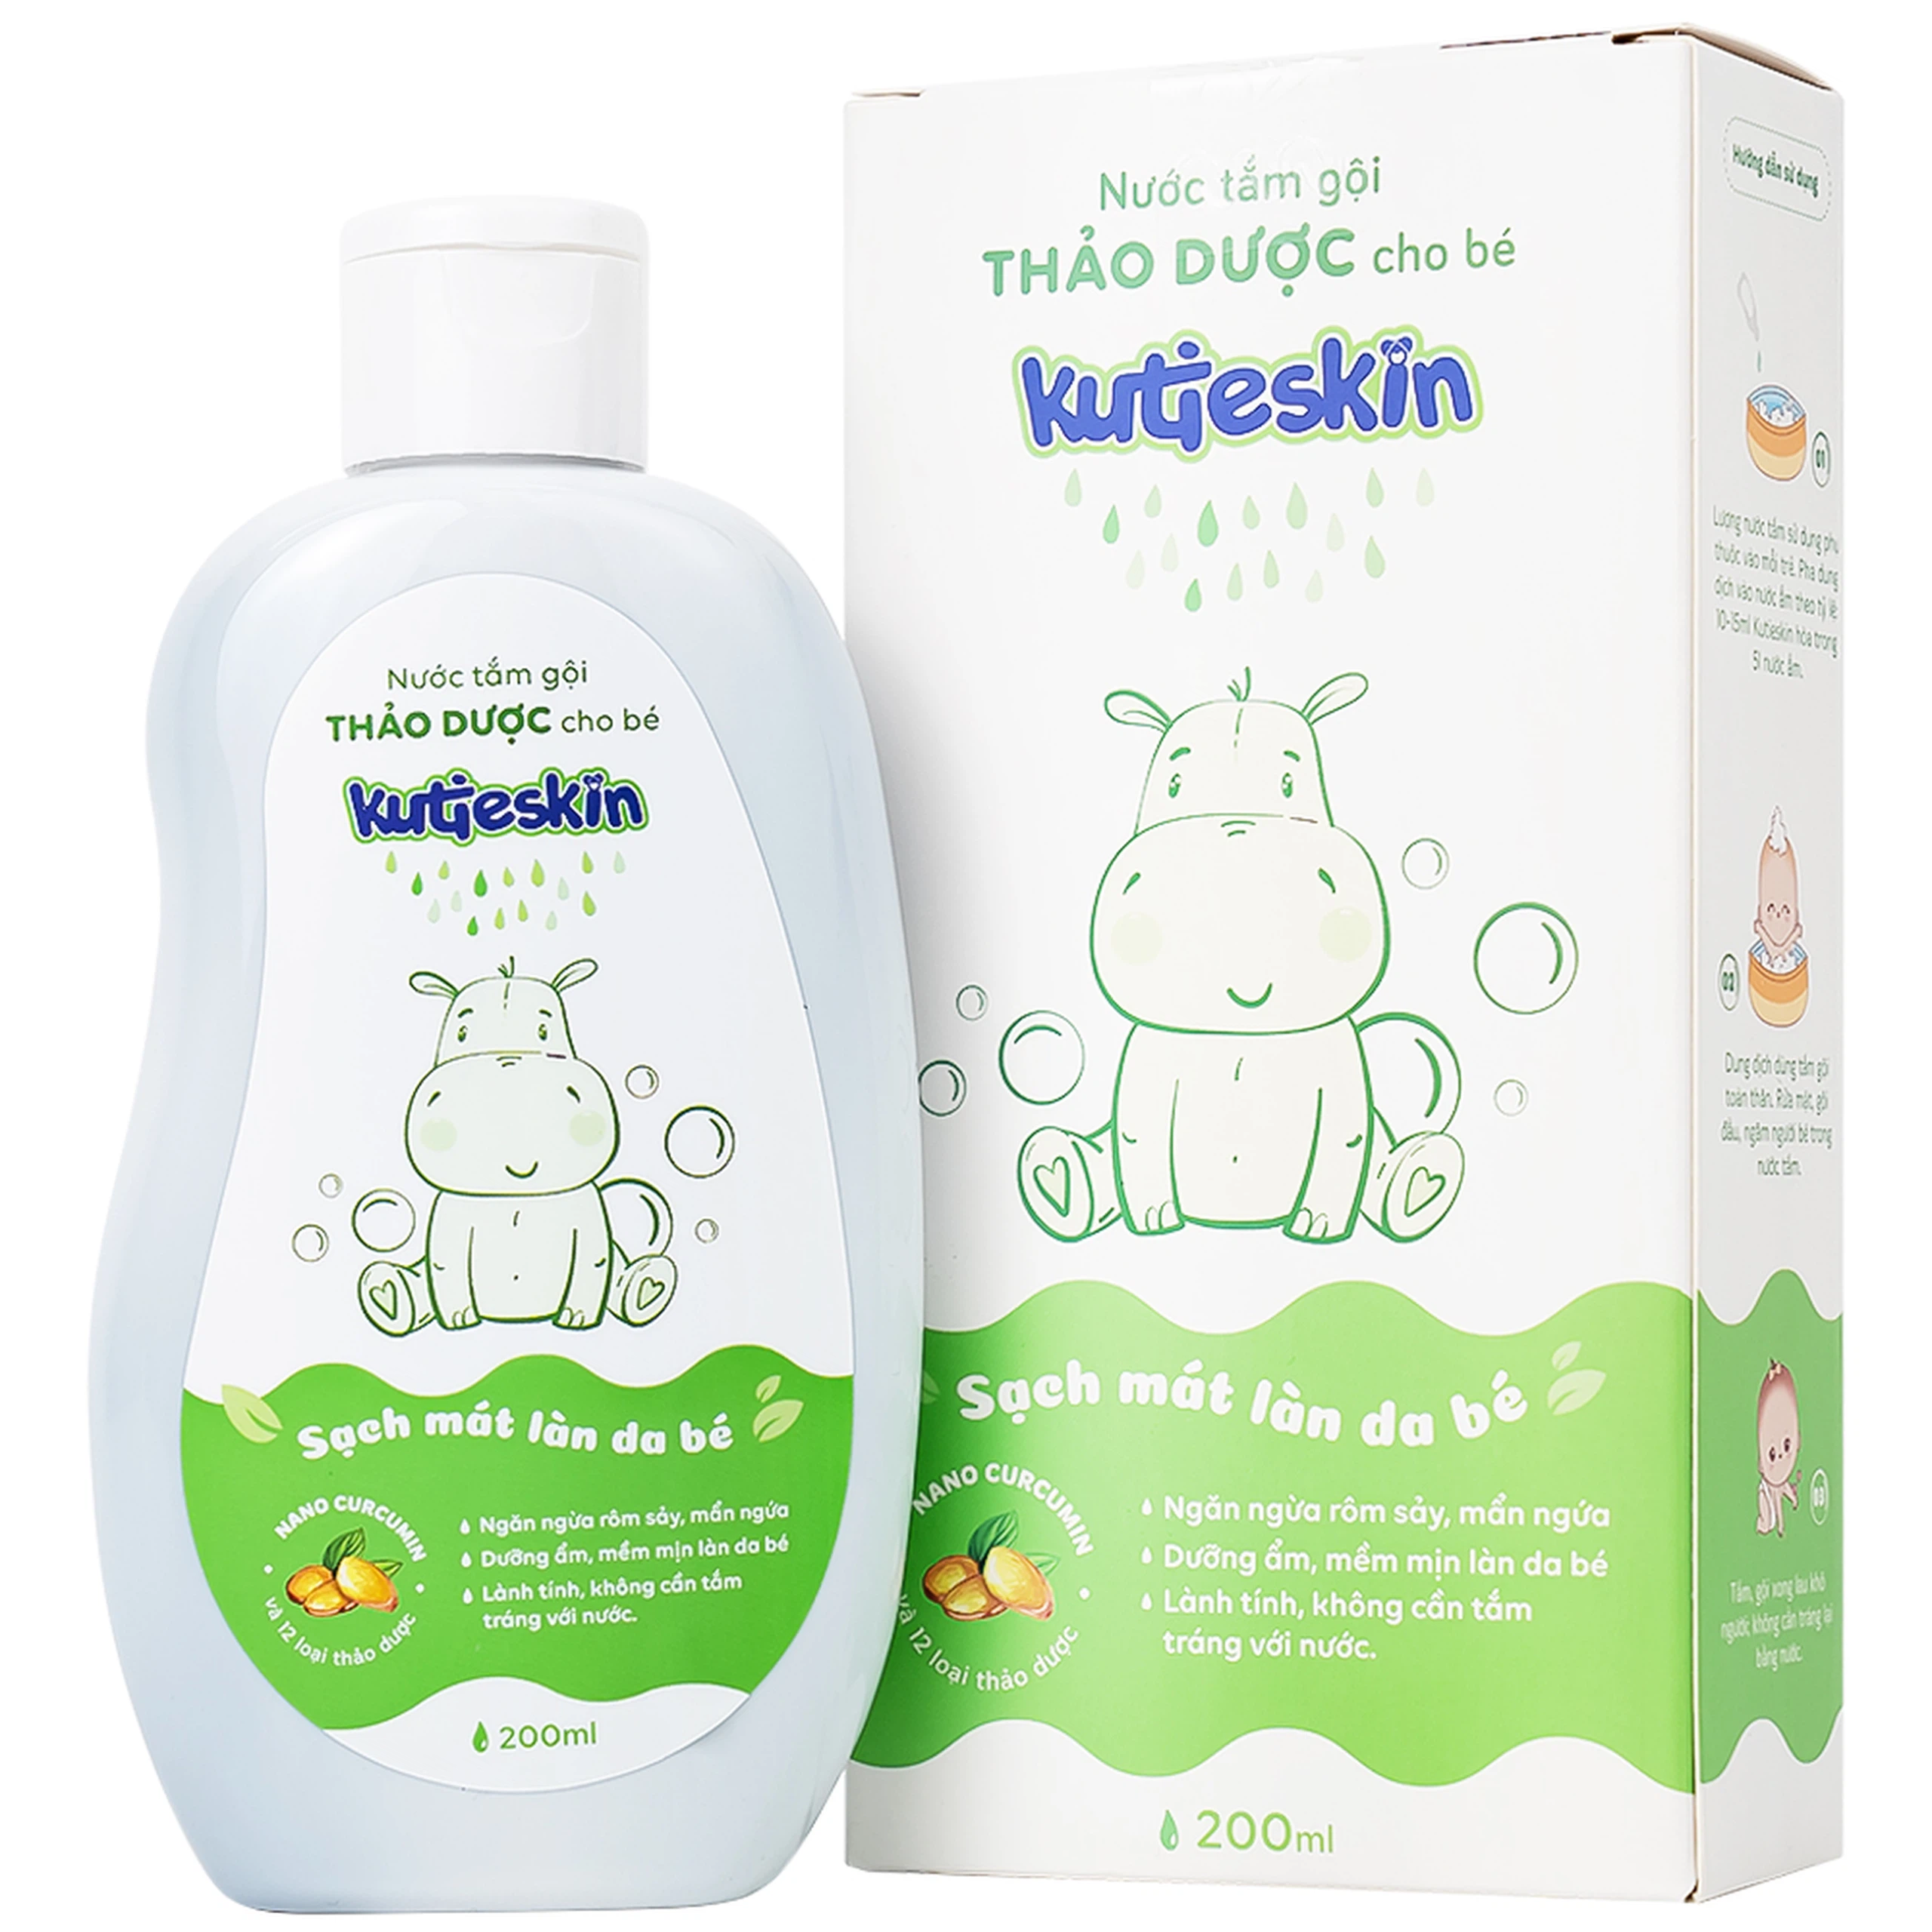 Nước tắm gội Thảo Dược cho bé Kutieskin CVI ngăn ngừa rôm sảy, mẩn ngứa, giúp dưỡng ẩm da bé (200ml)